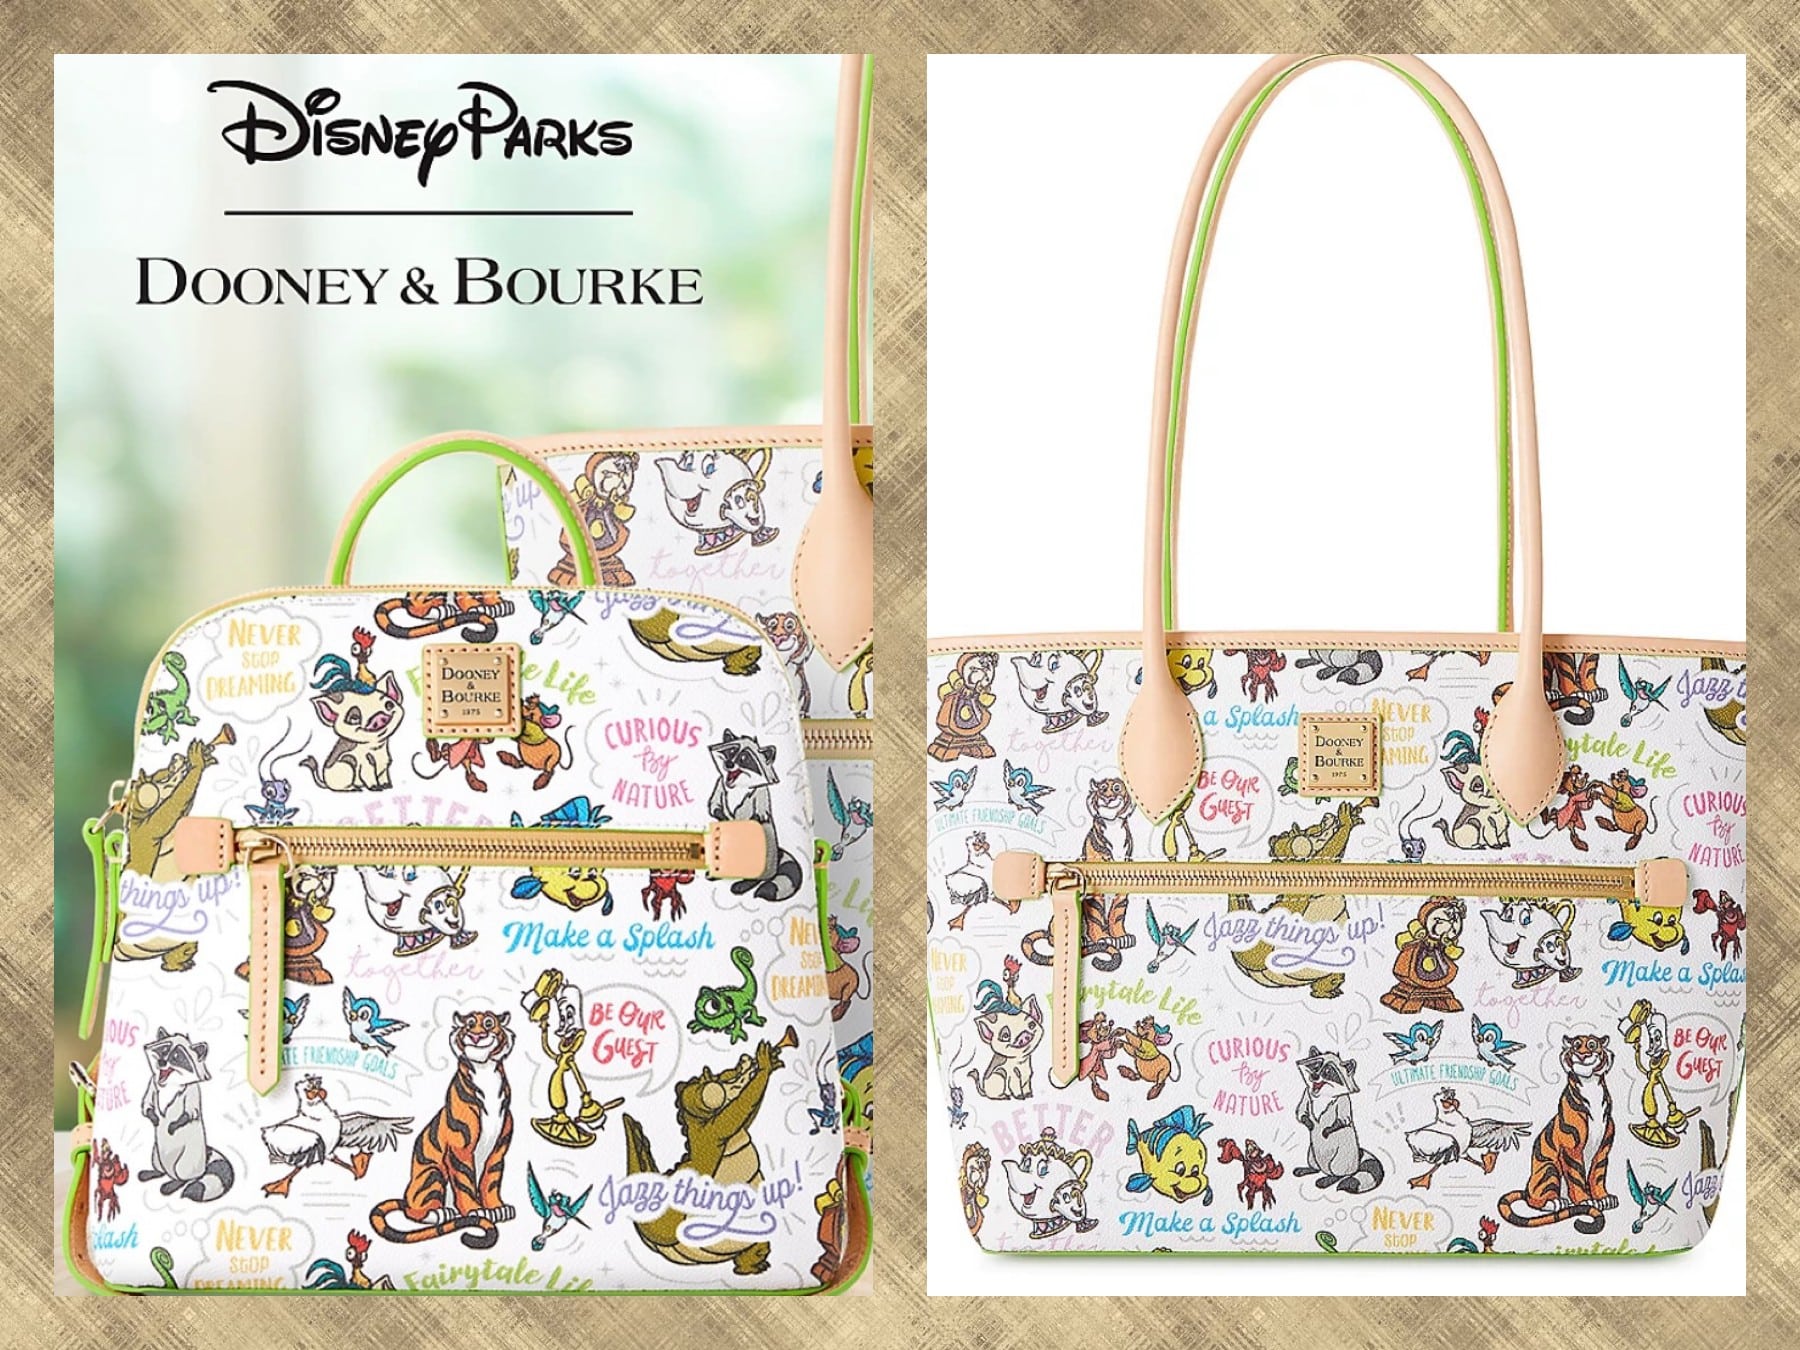 Disney Sidekicks Dooney & Bourke Bags Now on shopDisney